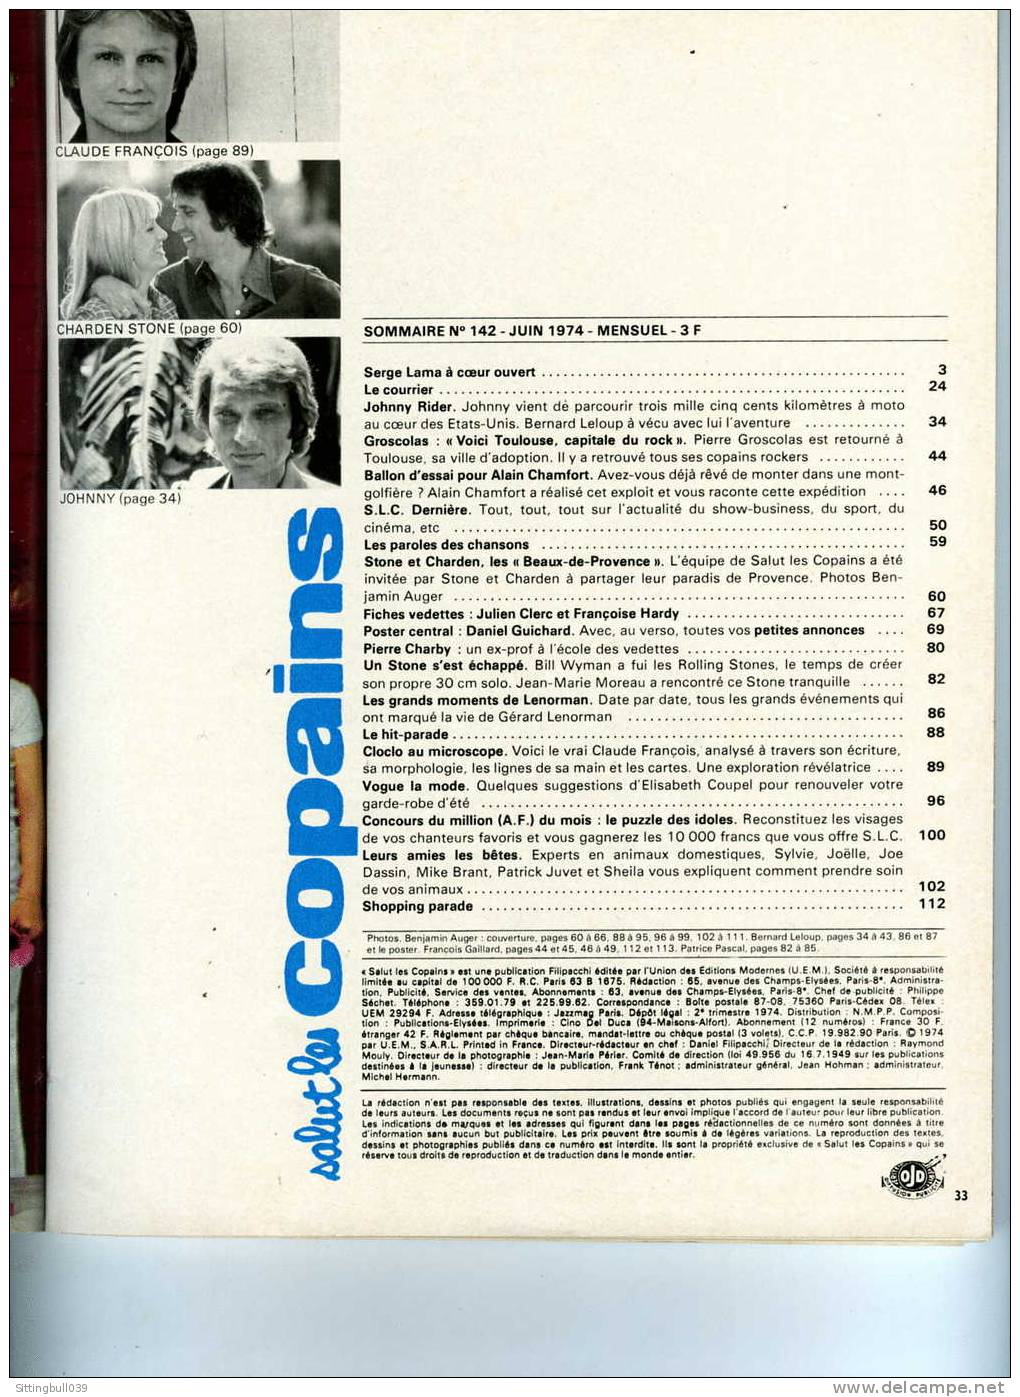 SALUT LES COPAINS N° 142 (SLC) JUIN 1974. CLOCLO, JOHNNY, ALAIN CHAMFORT STONE Et CHARDEN, Etc. SUPERBES PHOTOS. - Musique